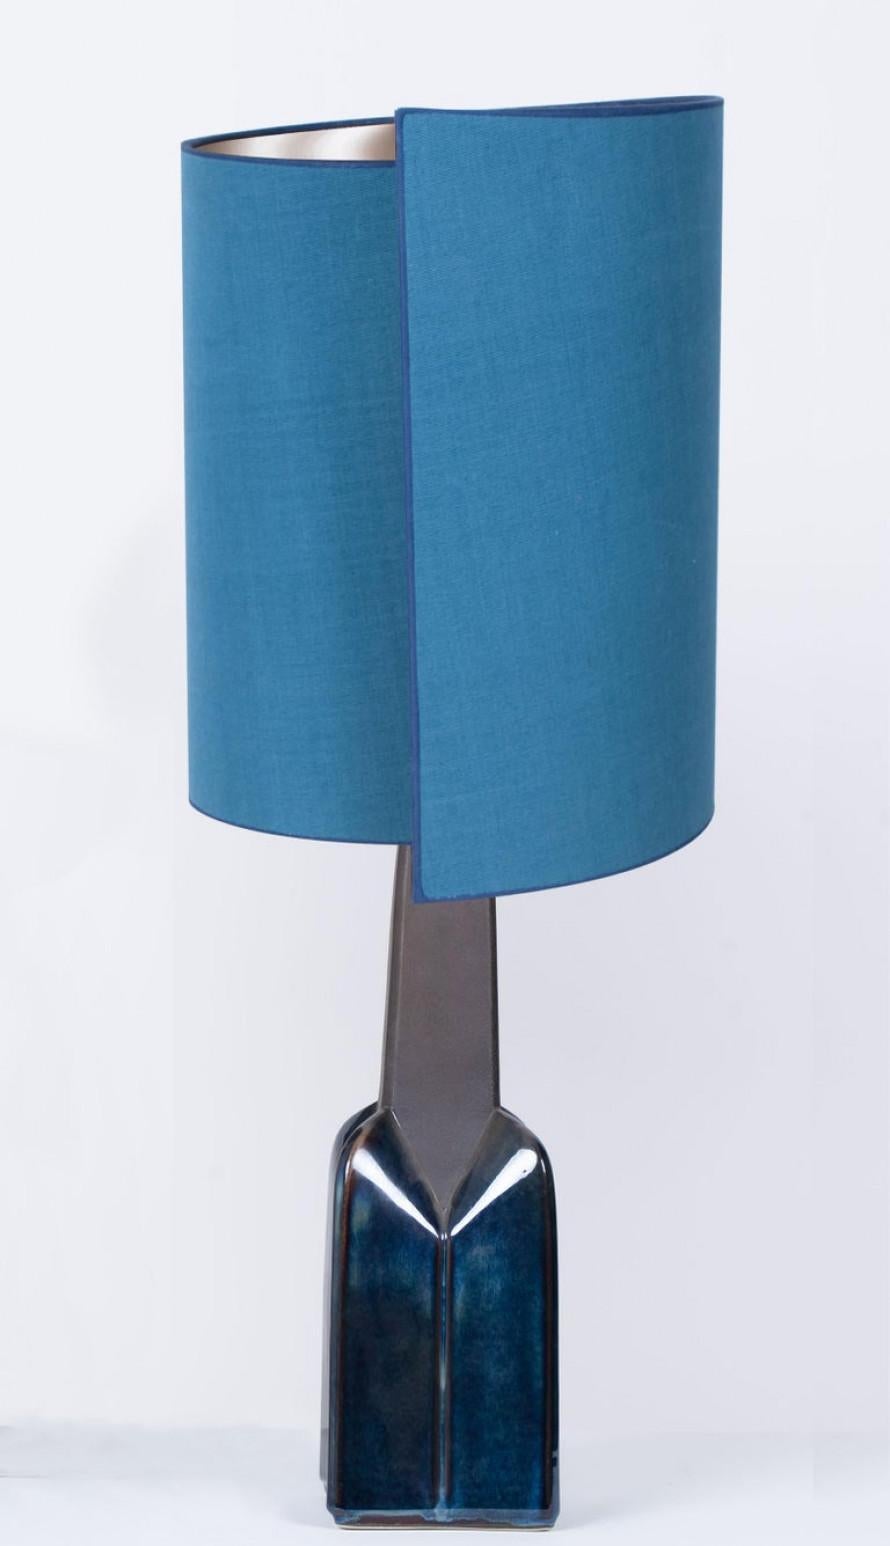 Lampe de table en céramique de Soholm, Danemark, années 1960. Cette pièce sculpturale haut de gamme est fabriquée à la main en céramique dans des tons bleus ou gris, avec une combinaison de finitions sèches et émaillées. Avec un nouvel abat-jour en